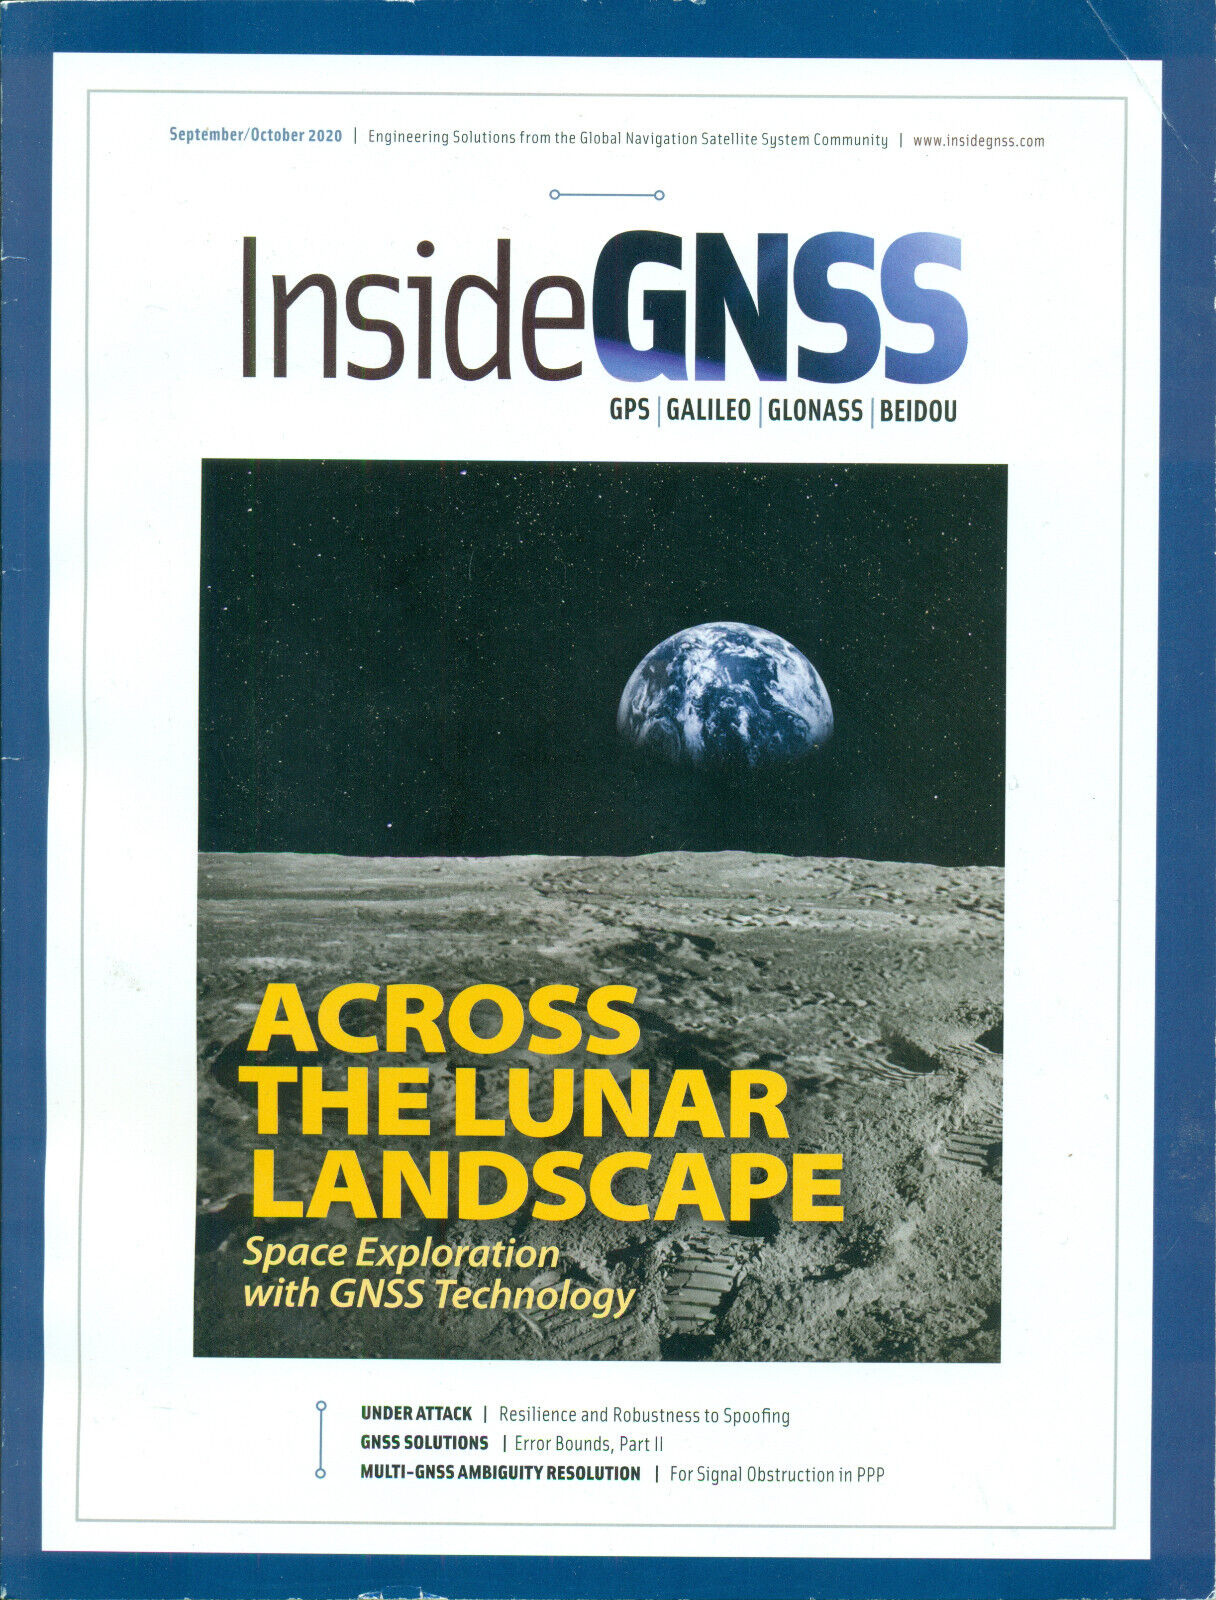 Insidegnss - 2020 Sep/oct: Gps/galilieo/glonas/beidou/satellite/navigation/space